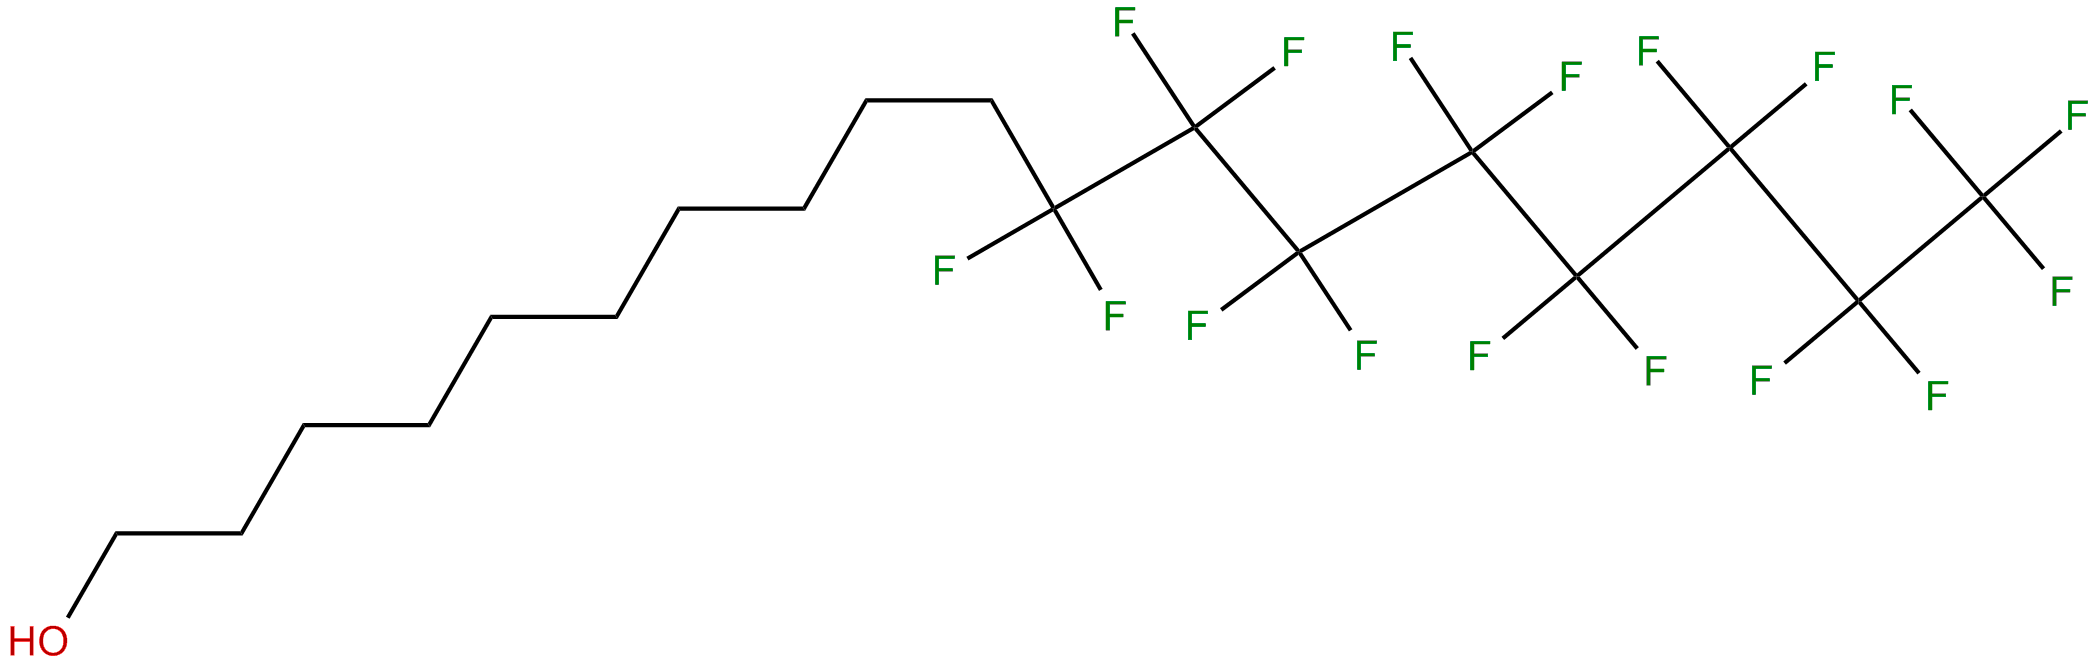 Image of 11,11,12,12,13,13,14,14,15,15,16,16,17,17,18,18,18-heptadecafluoro-1-octadecanol